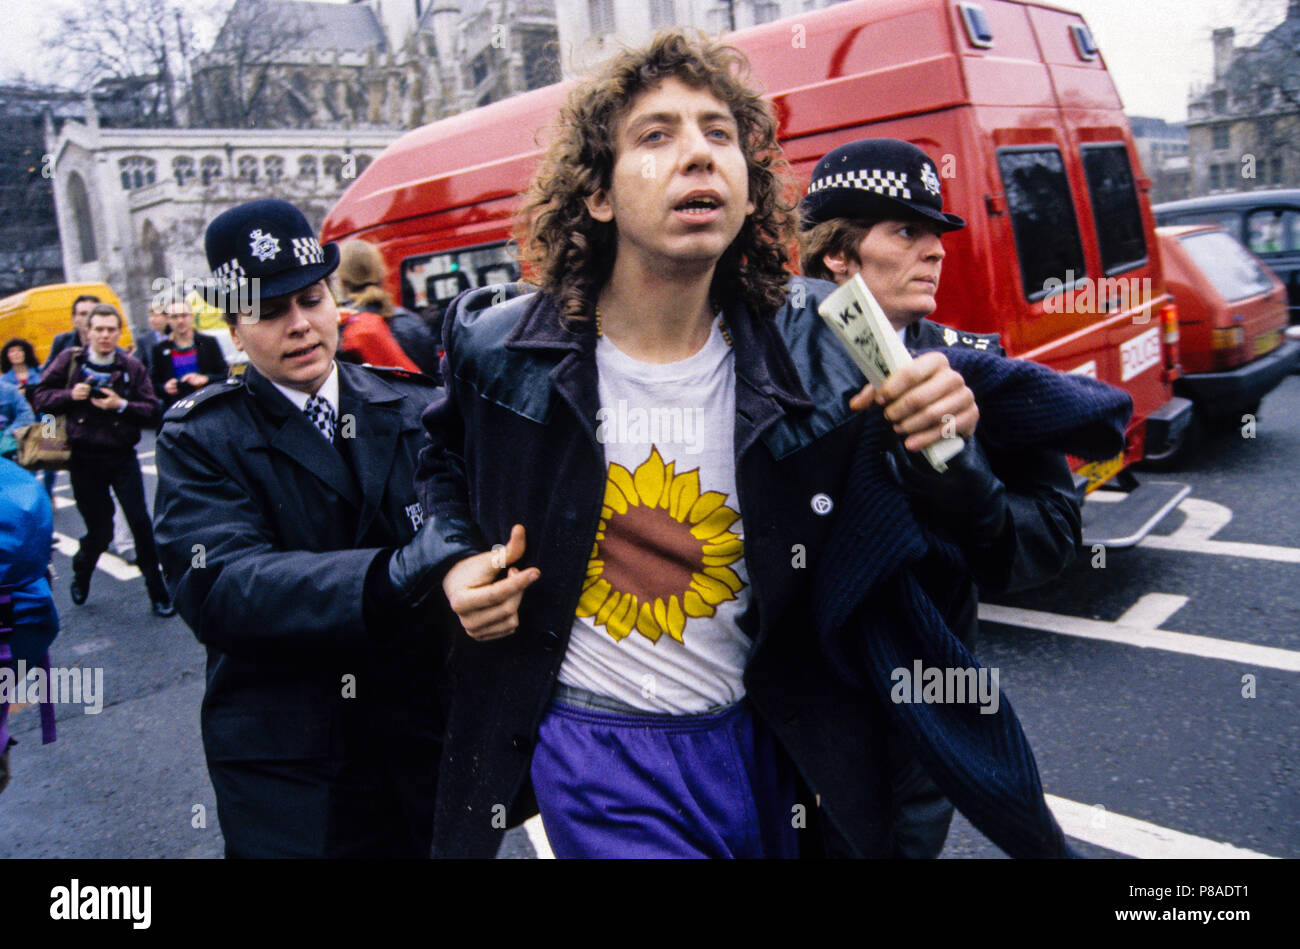 Earth First siendo Activista arrestado en Rainforest protesta fuera de las Casas del Parlamento, el London, England, Reino Unido, GB. Foto de stock